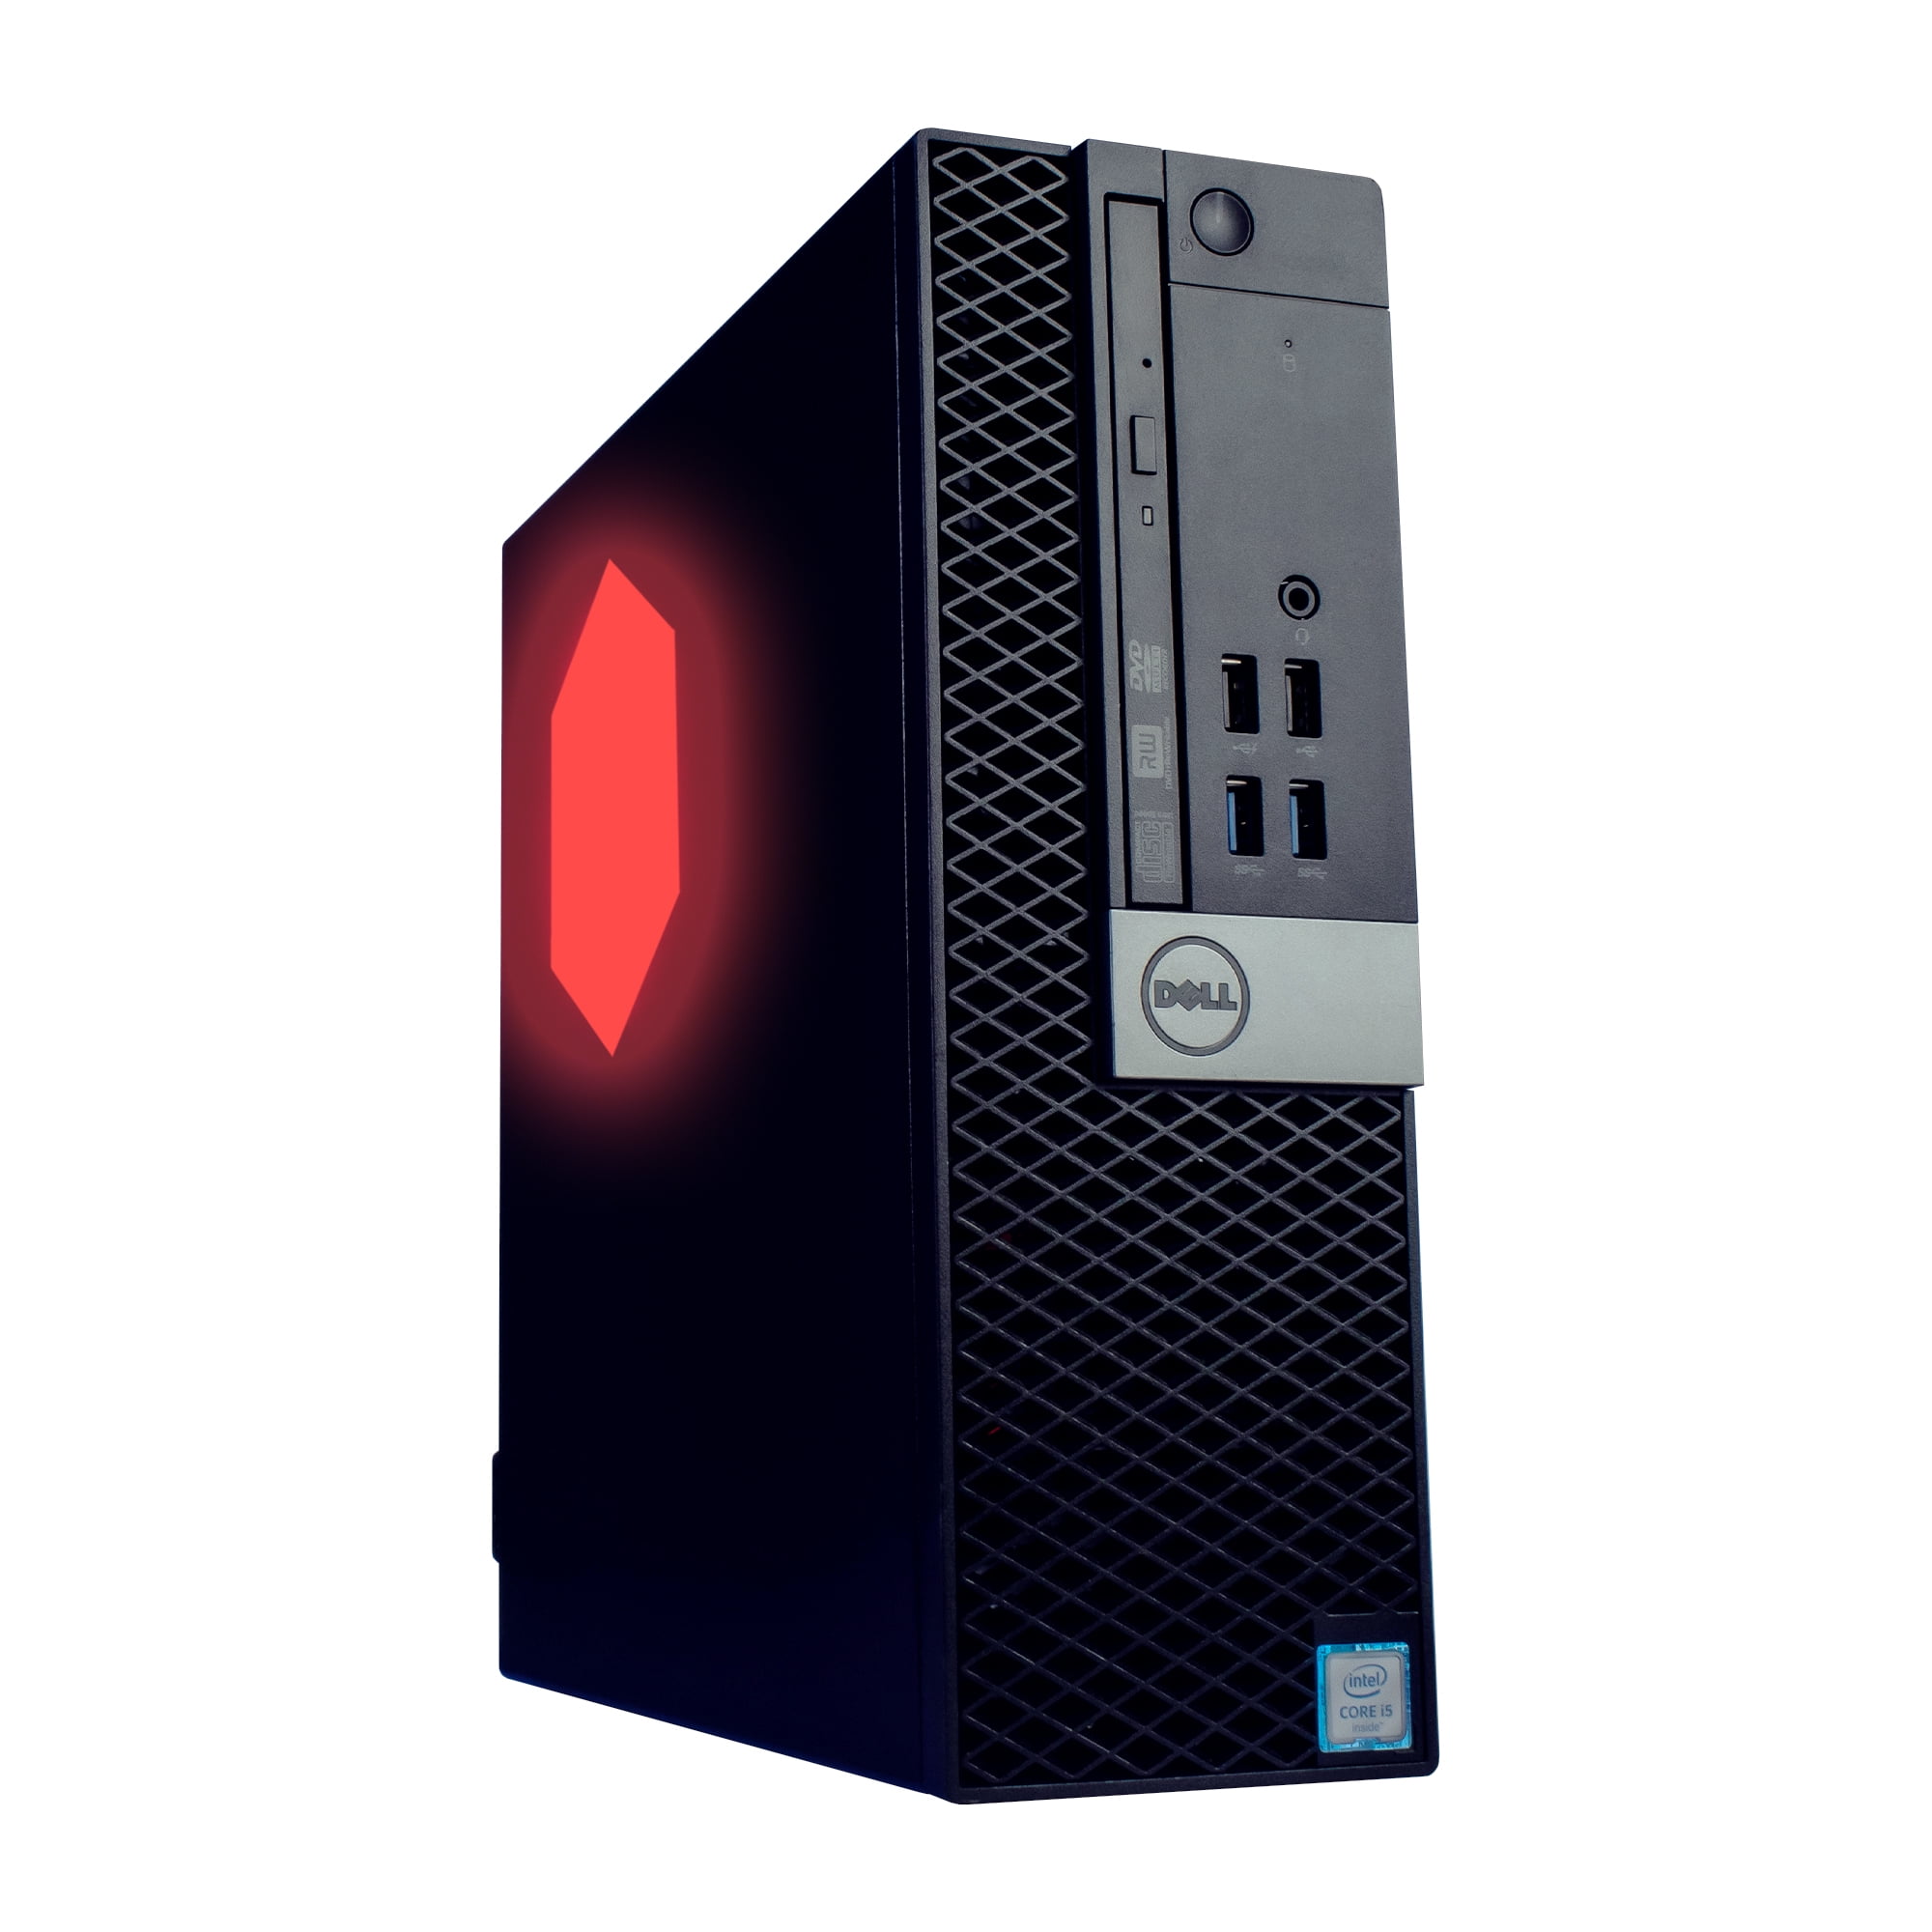 Dell Prebuilt RGB Gaming Desktop Computer - Core i7 + GeForce GT 